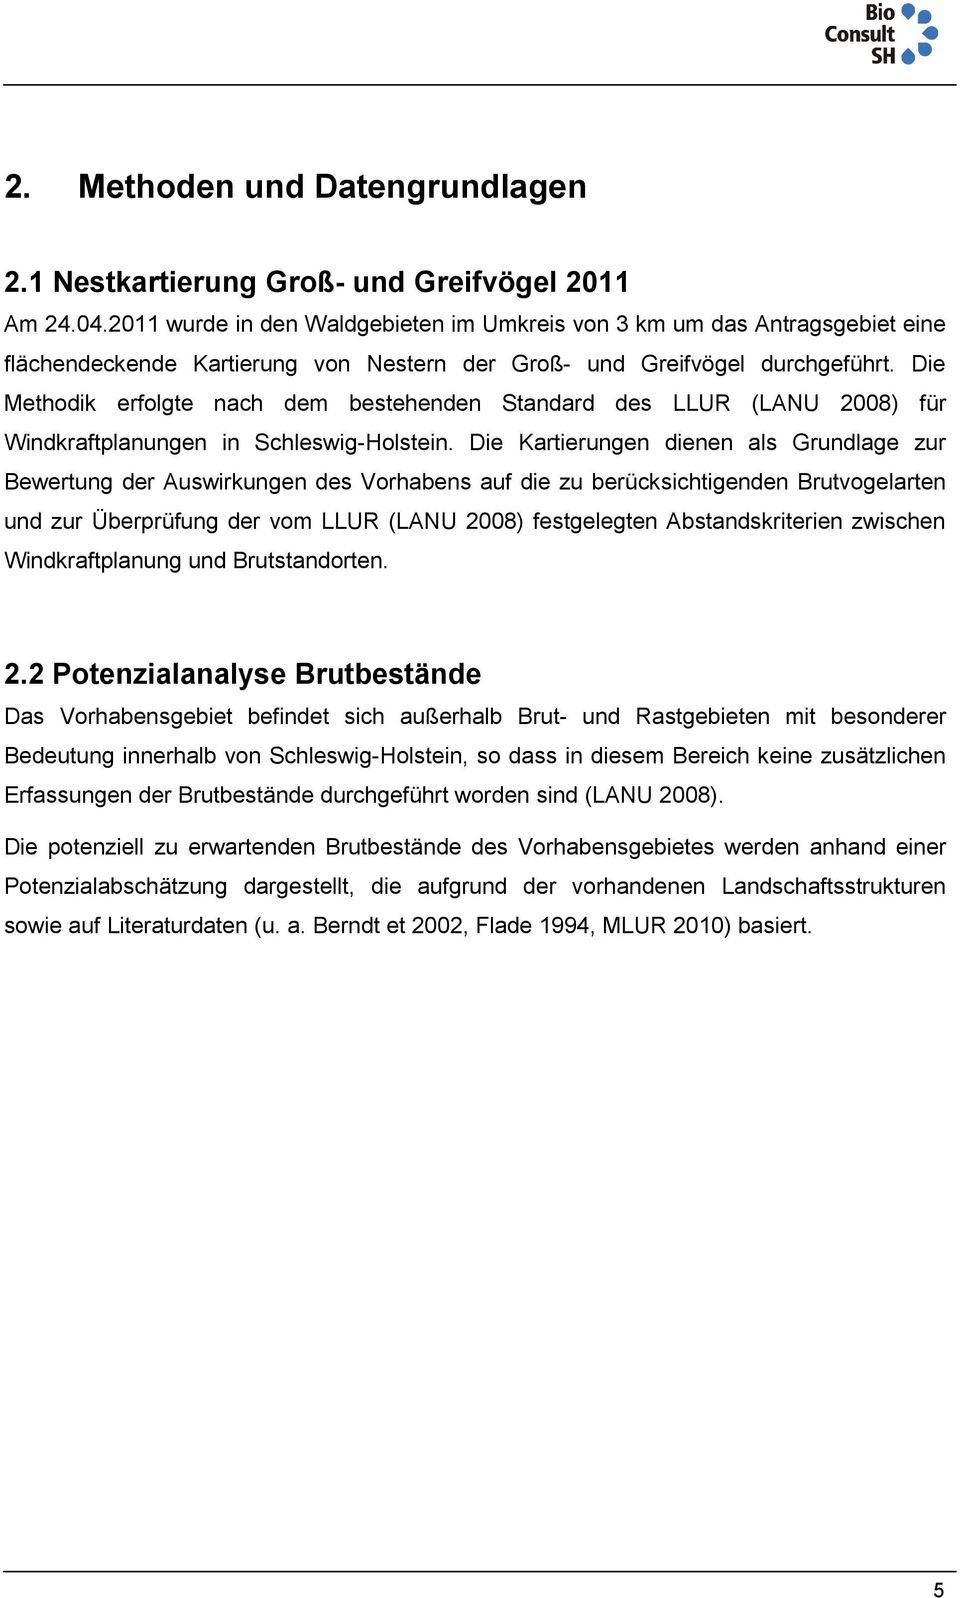 Die Methodik erfolgte nach dem bestehenden Standard des LLUR (LANU 2008) für Windkraftplanungen in Schleswig-Holstein.